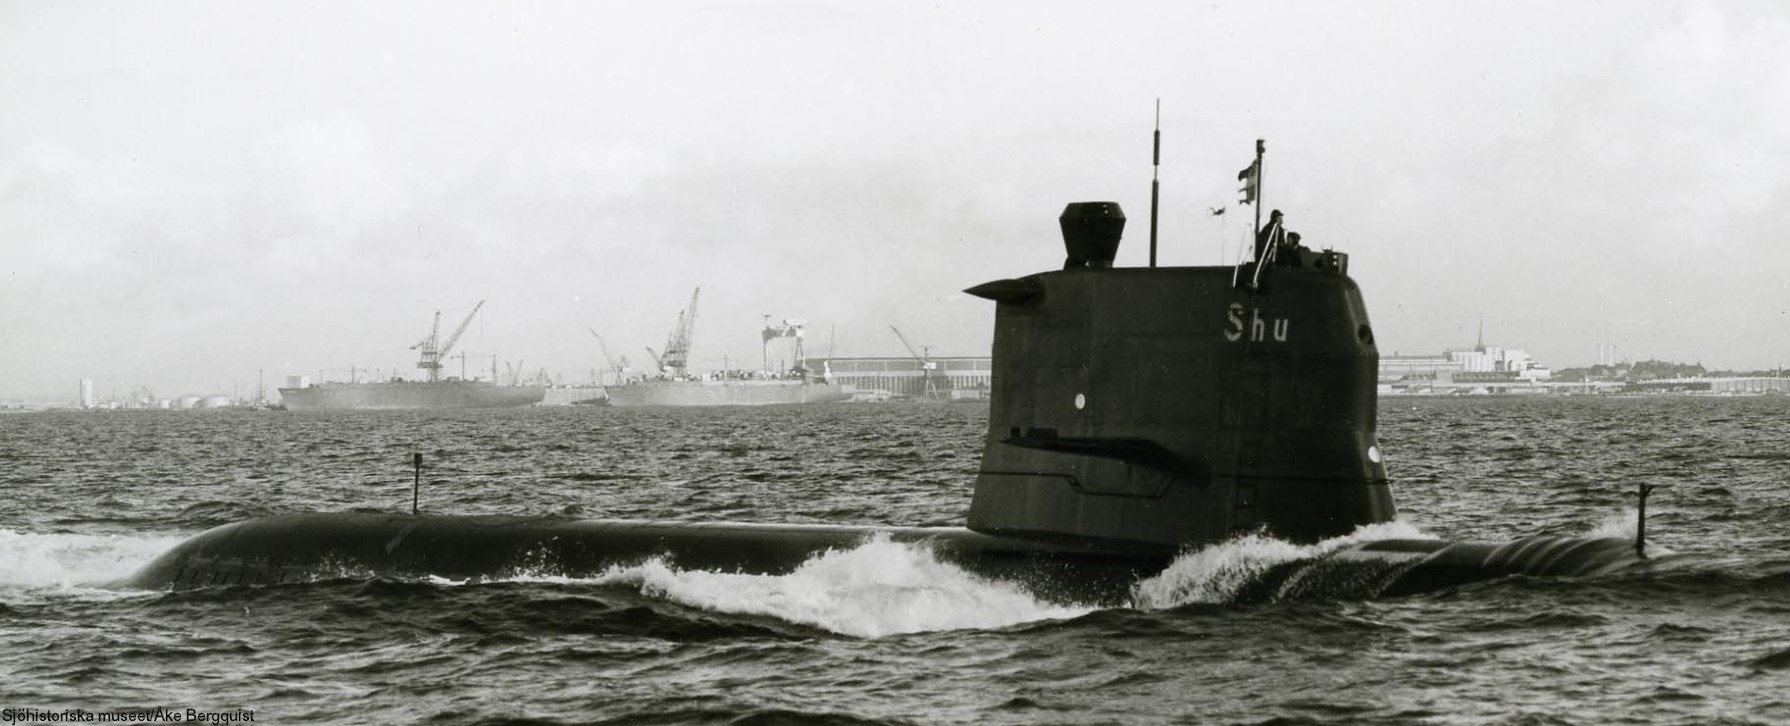 hswms hms sjöhunden shu sjöormen a11 class submarine ssk swedish navy svenska marinen försvarsmakten 05